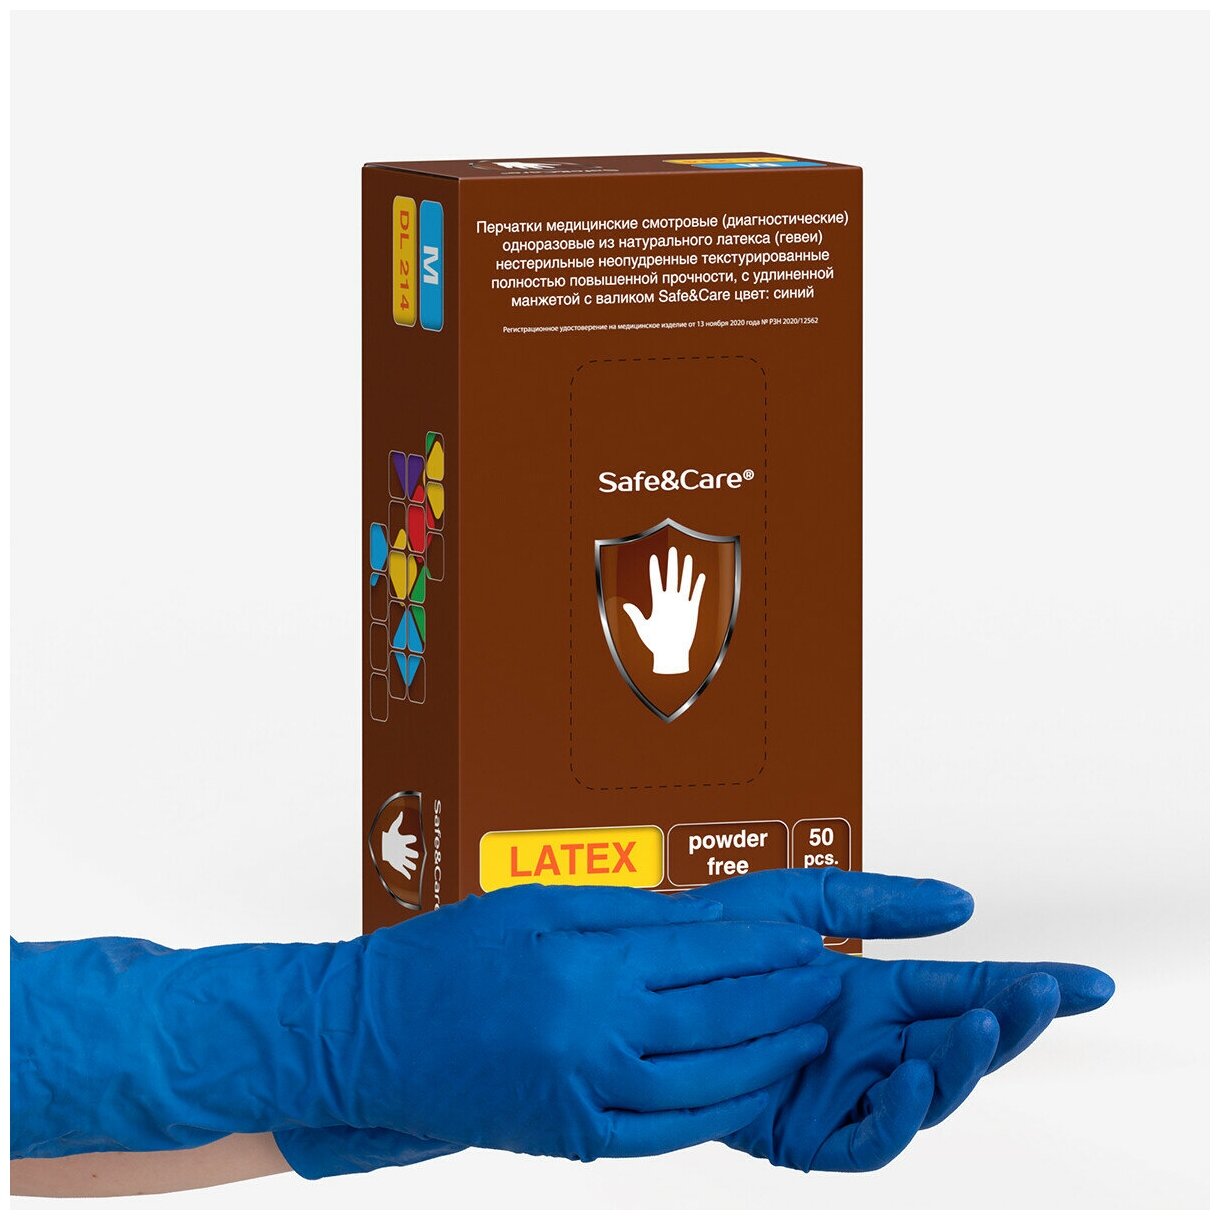 Перчатки латексные сверхпрочные High Risk Safe&Care DL 214, цвет: синий, размер S, 50 шт. (25 пар) двукратного хлорирования